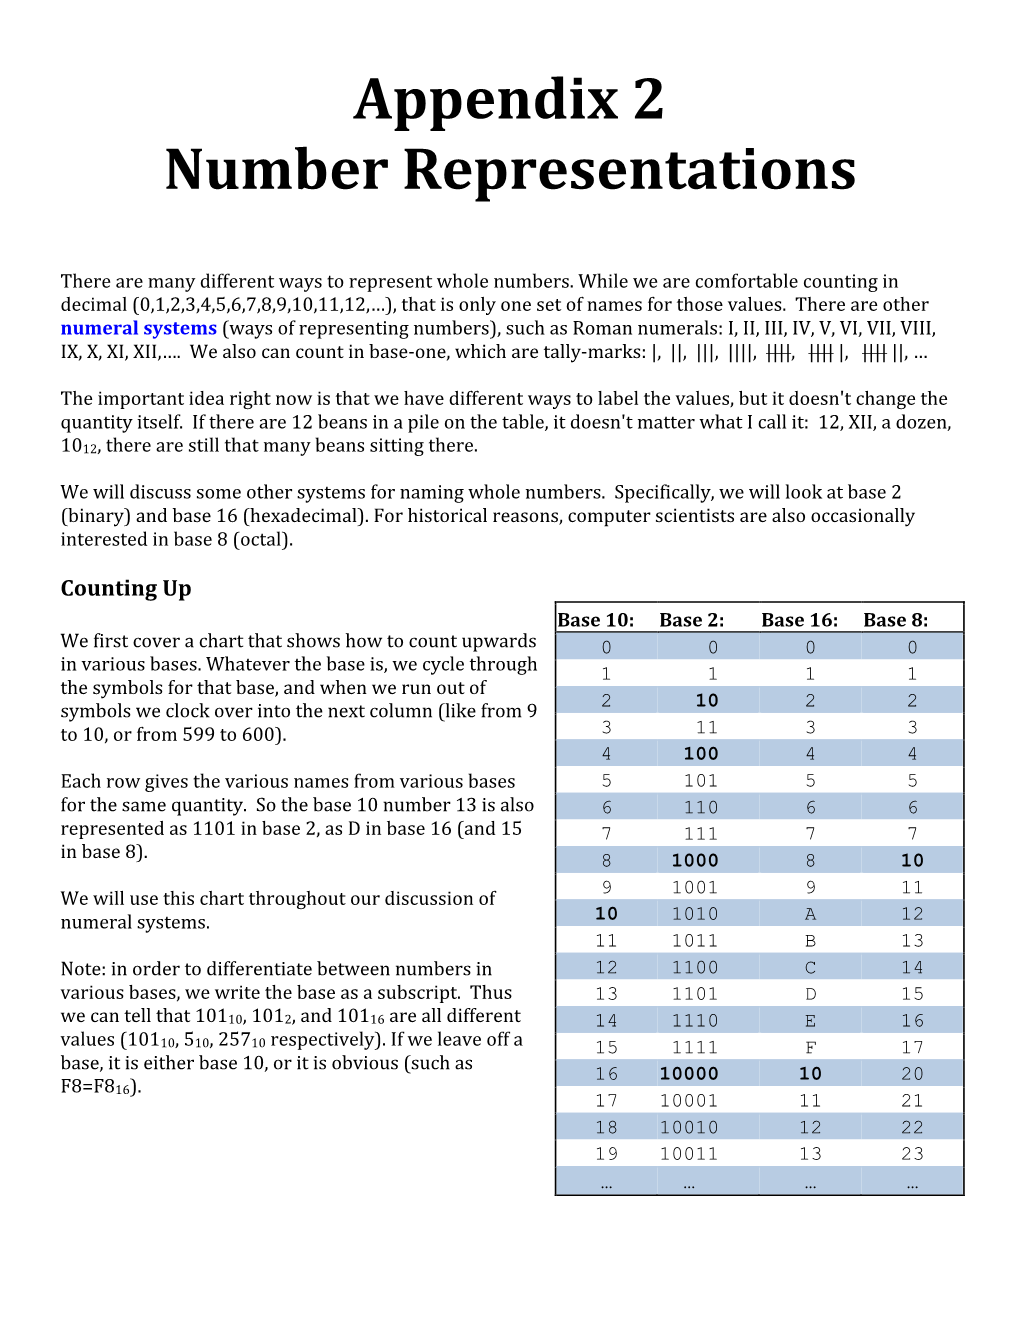 Appendix 2 Number Representations